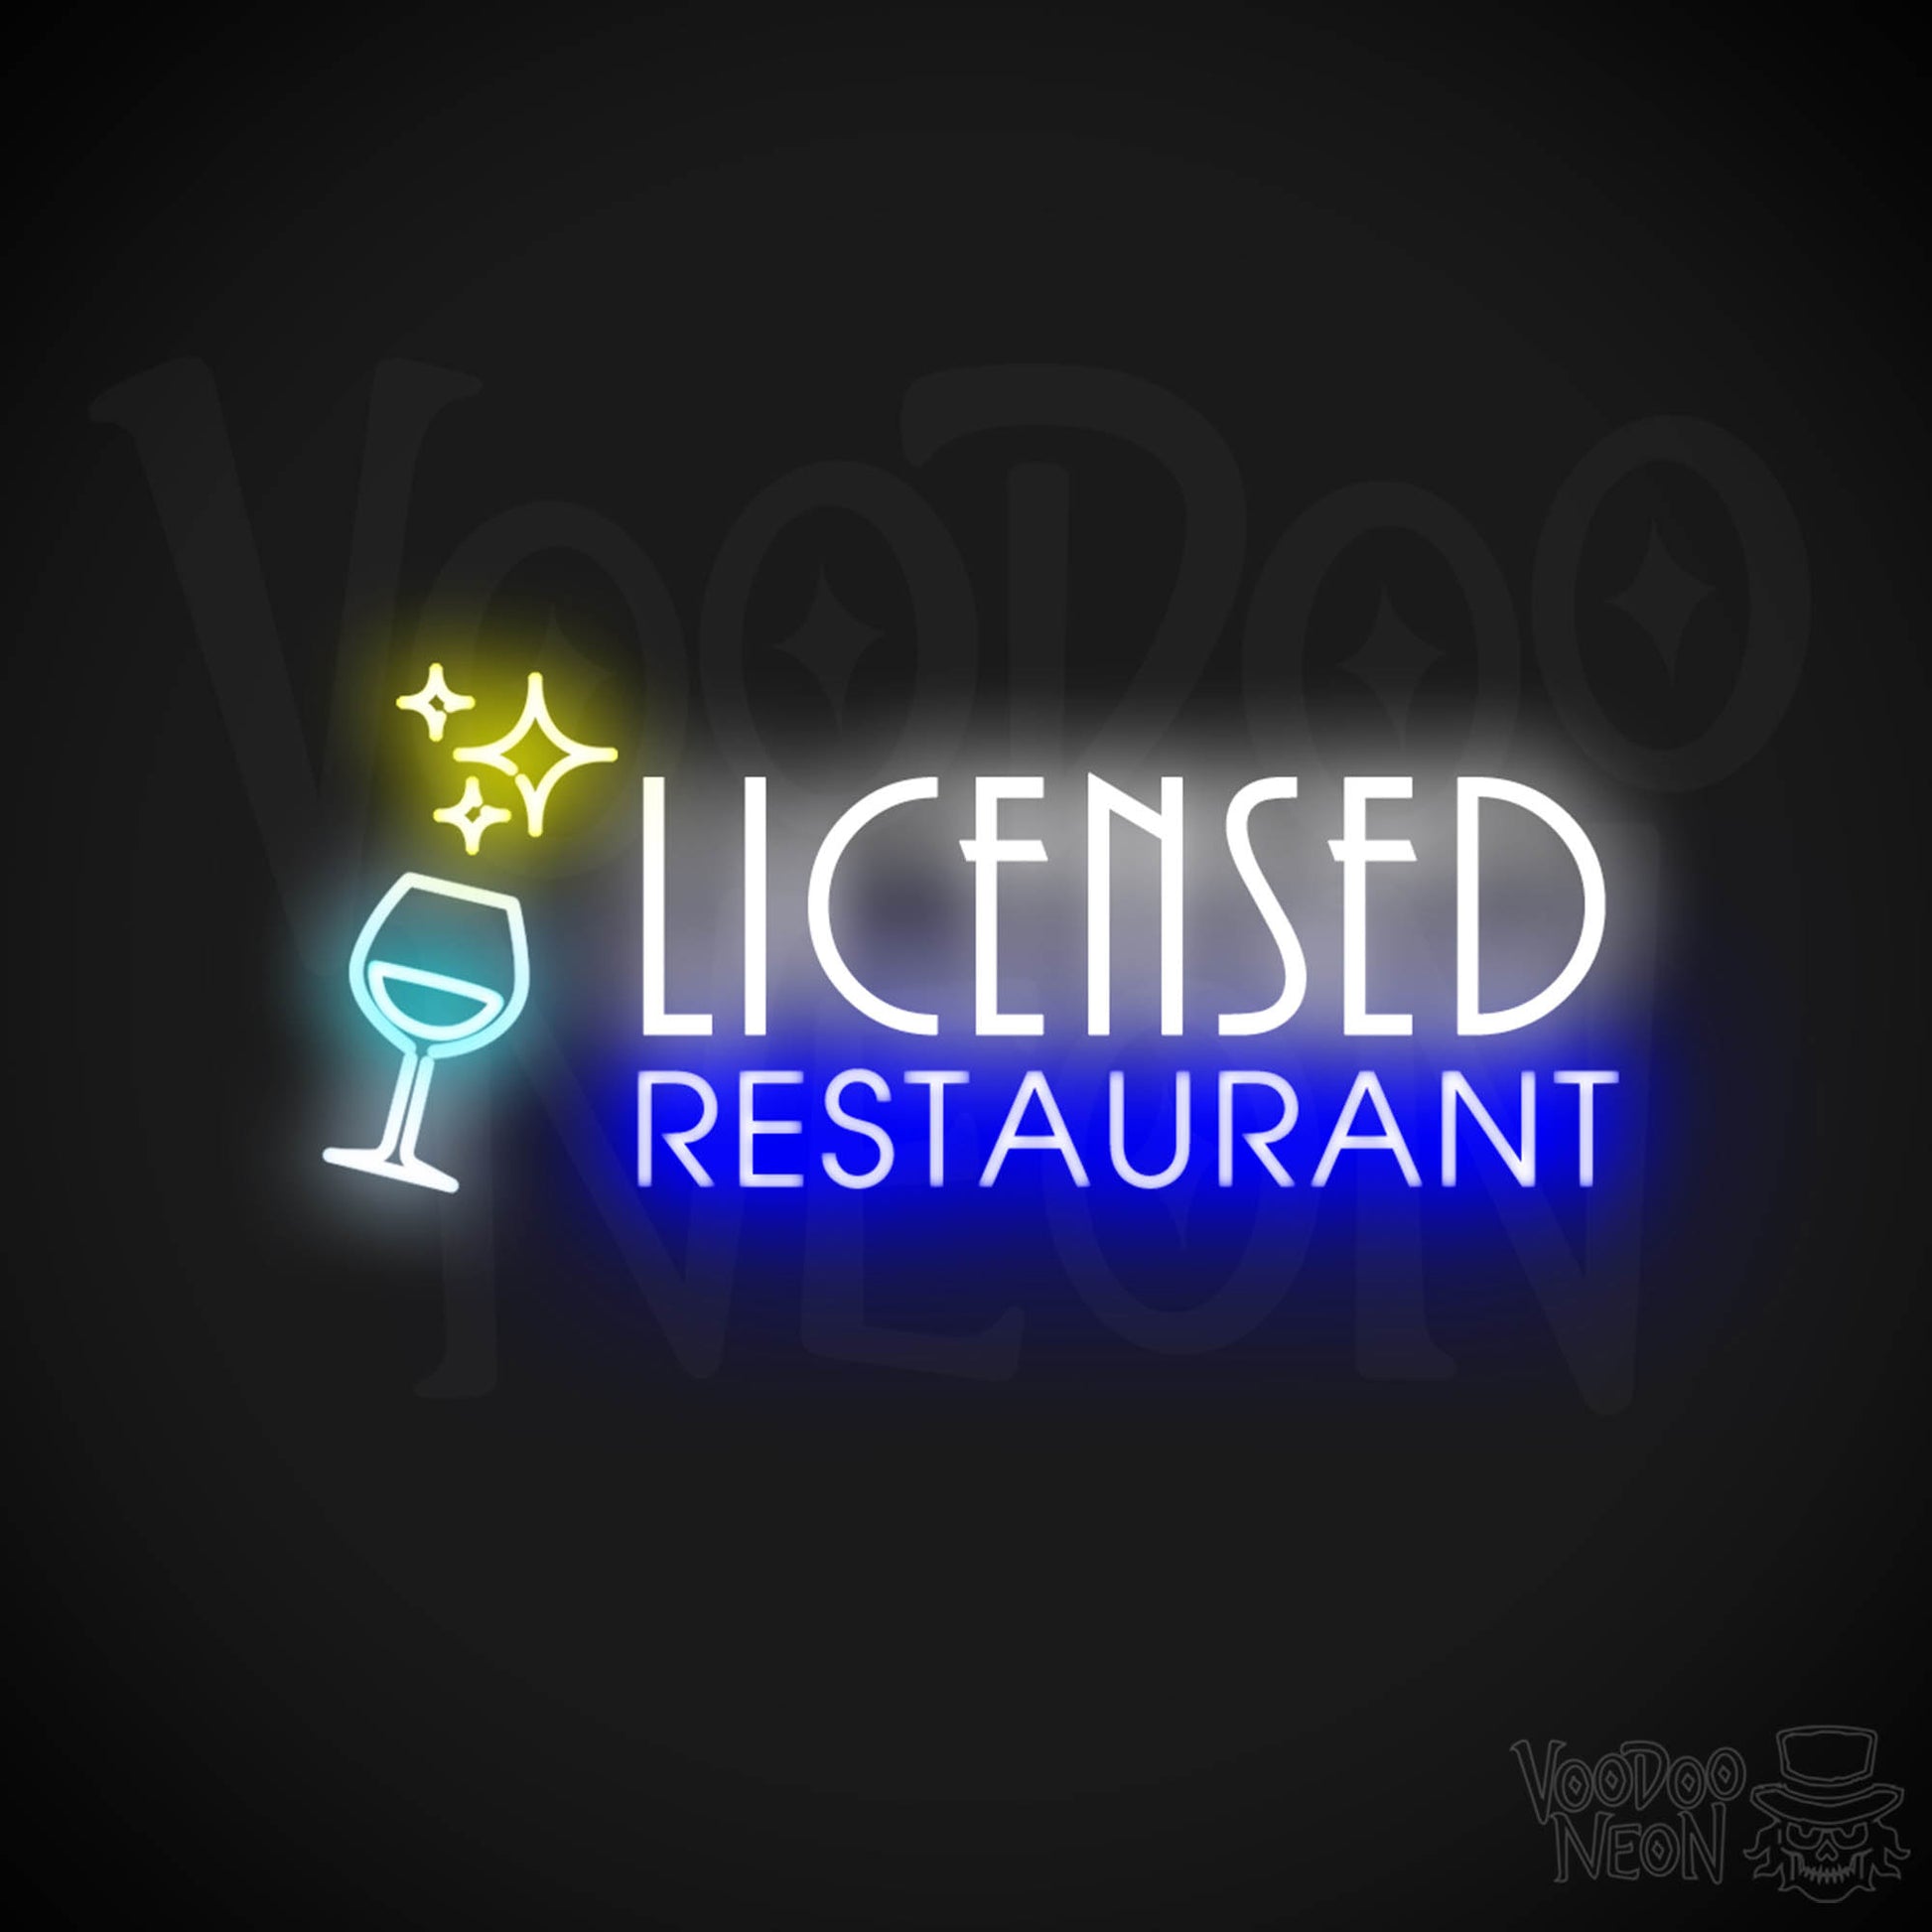 Licensed Restaurant Neon Sign - Licensed Restaurant Sign - Color Multi-Color